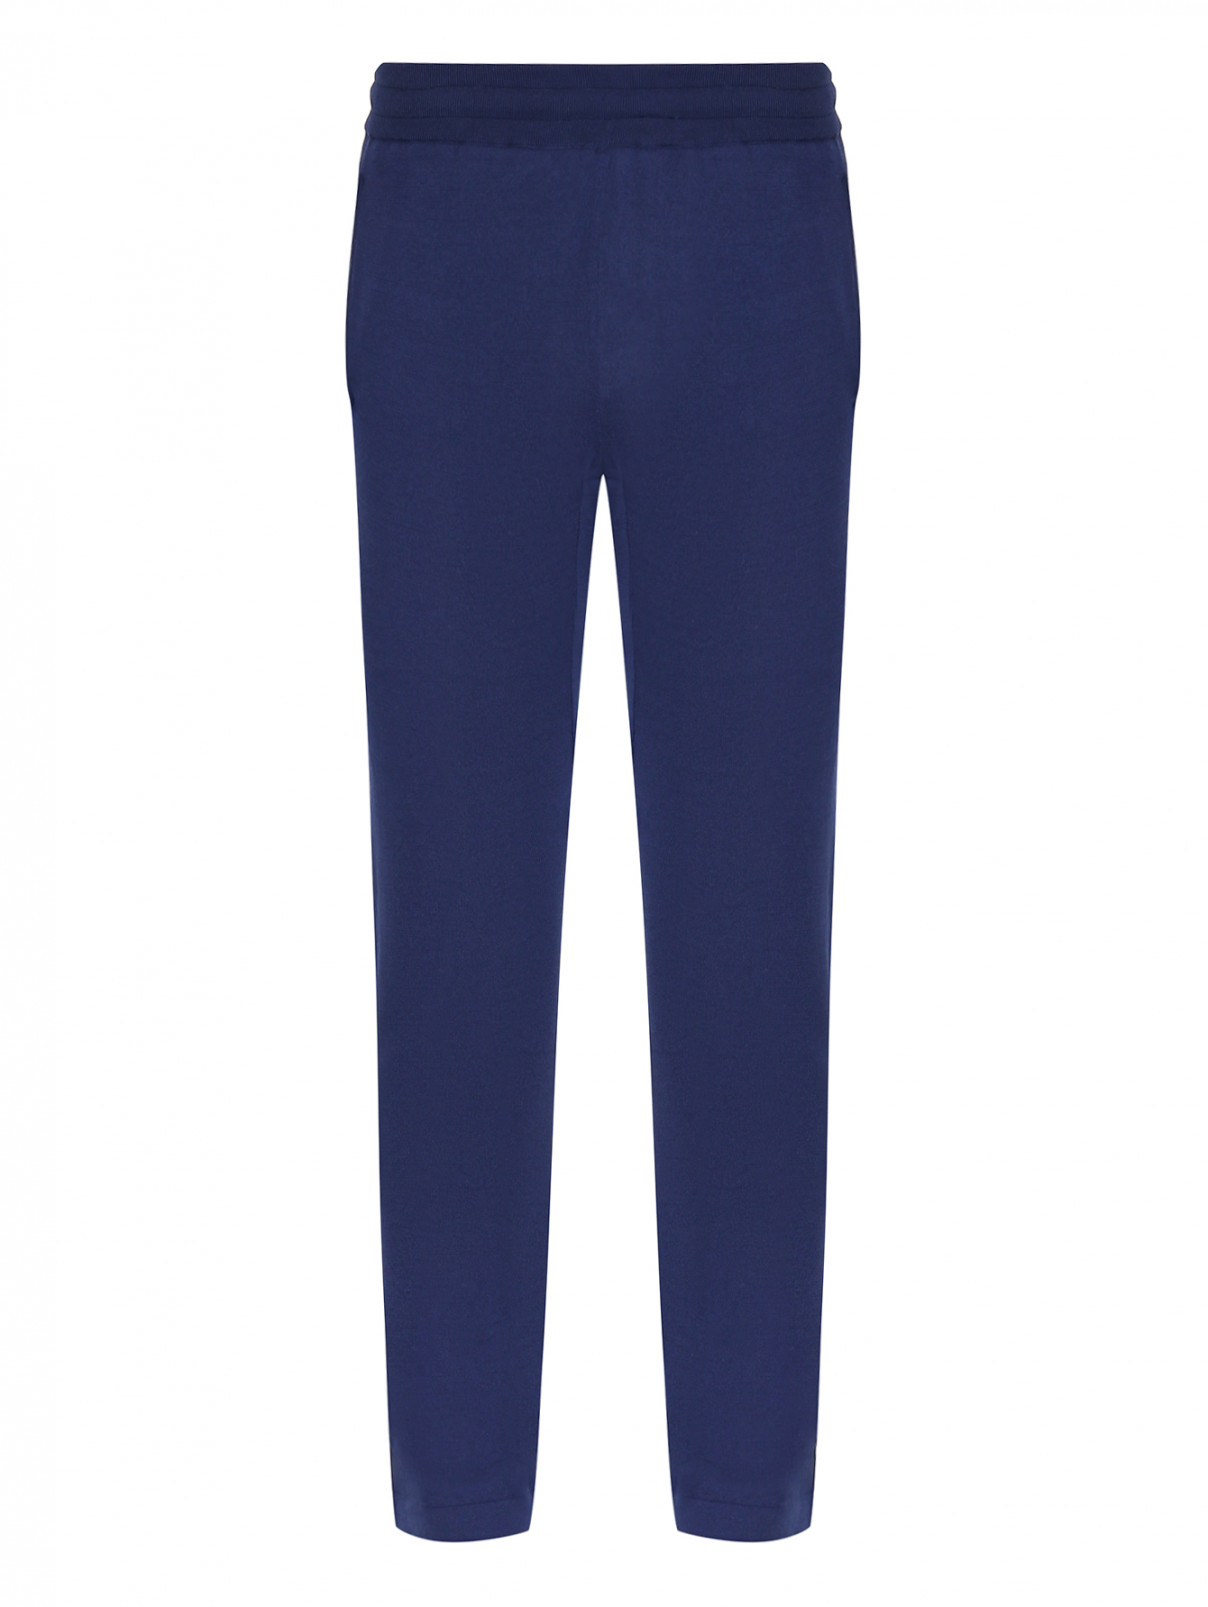 Трикотажные брюки из шелка и хлопка Pashmere  –  Общий вид  – Цвет:  Синий